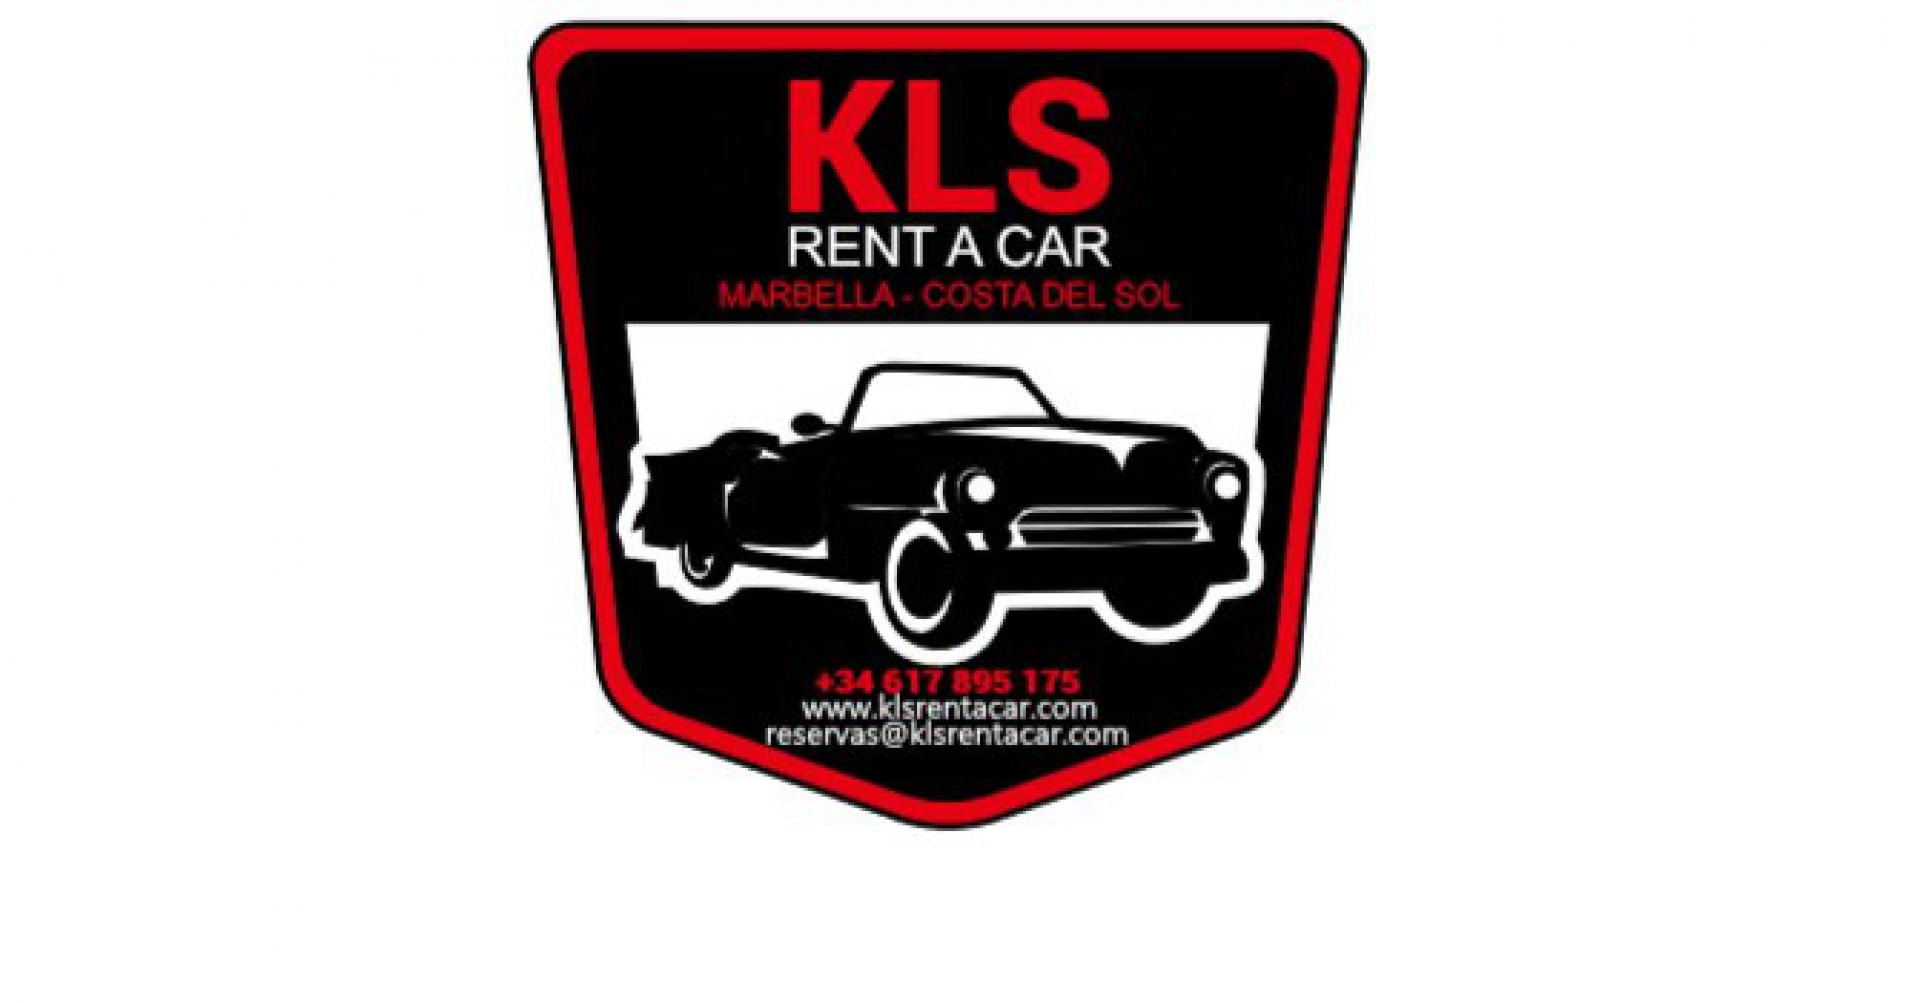 KLS Rent a Car